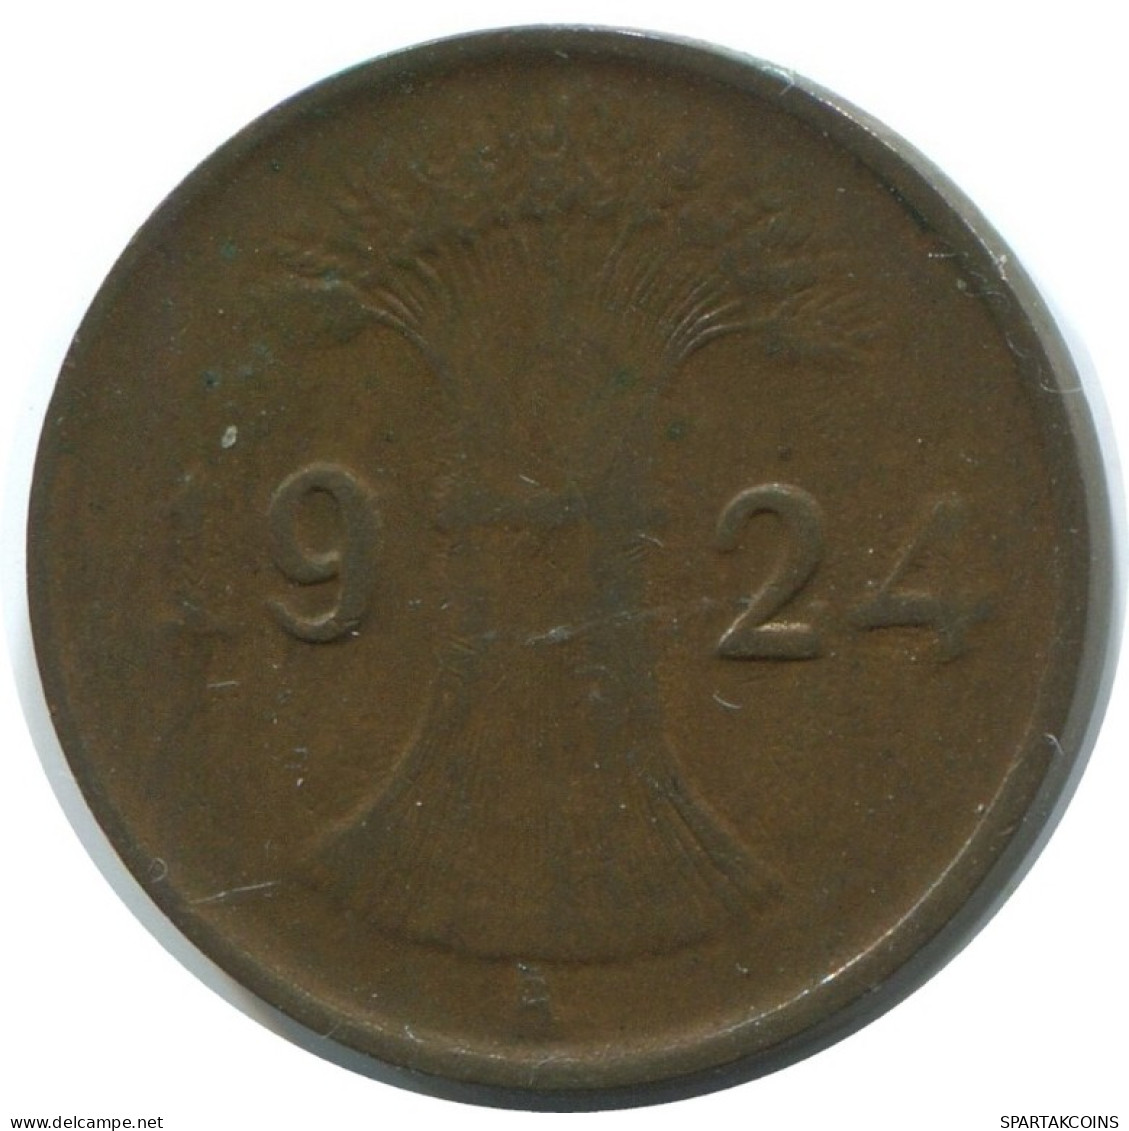 1 RENTENPFENNIG 1924 A ALLEMAGNE Pièce GERMANY #AE199.F.A - 1 Rentenpfennig & 1 Reichspfennig